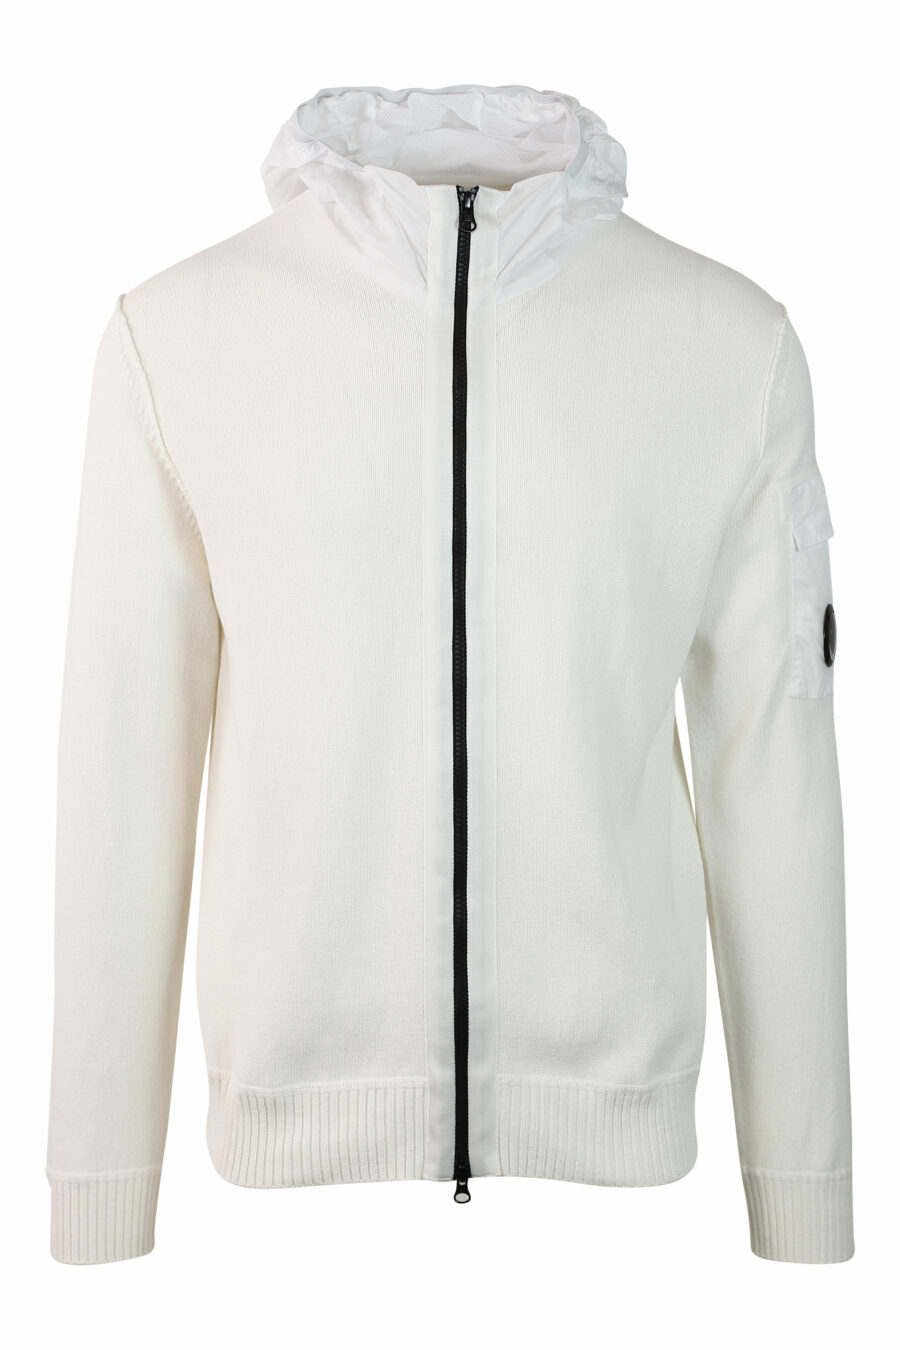 Sweat blanc avec capuche zippée et mini logo circulaire - IMG 0130